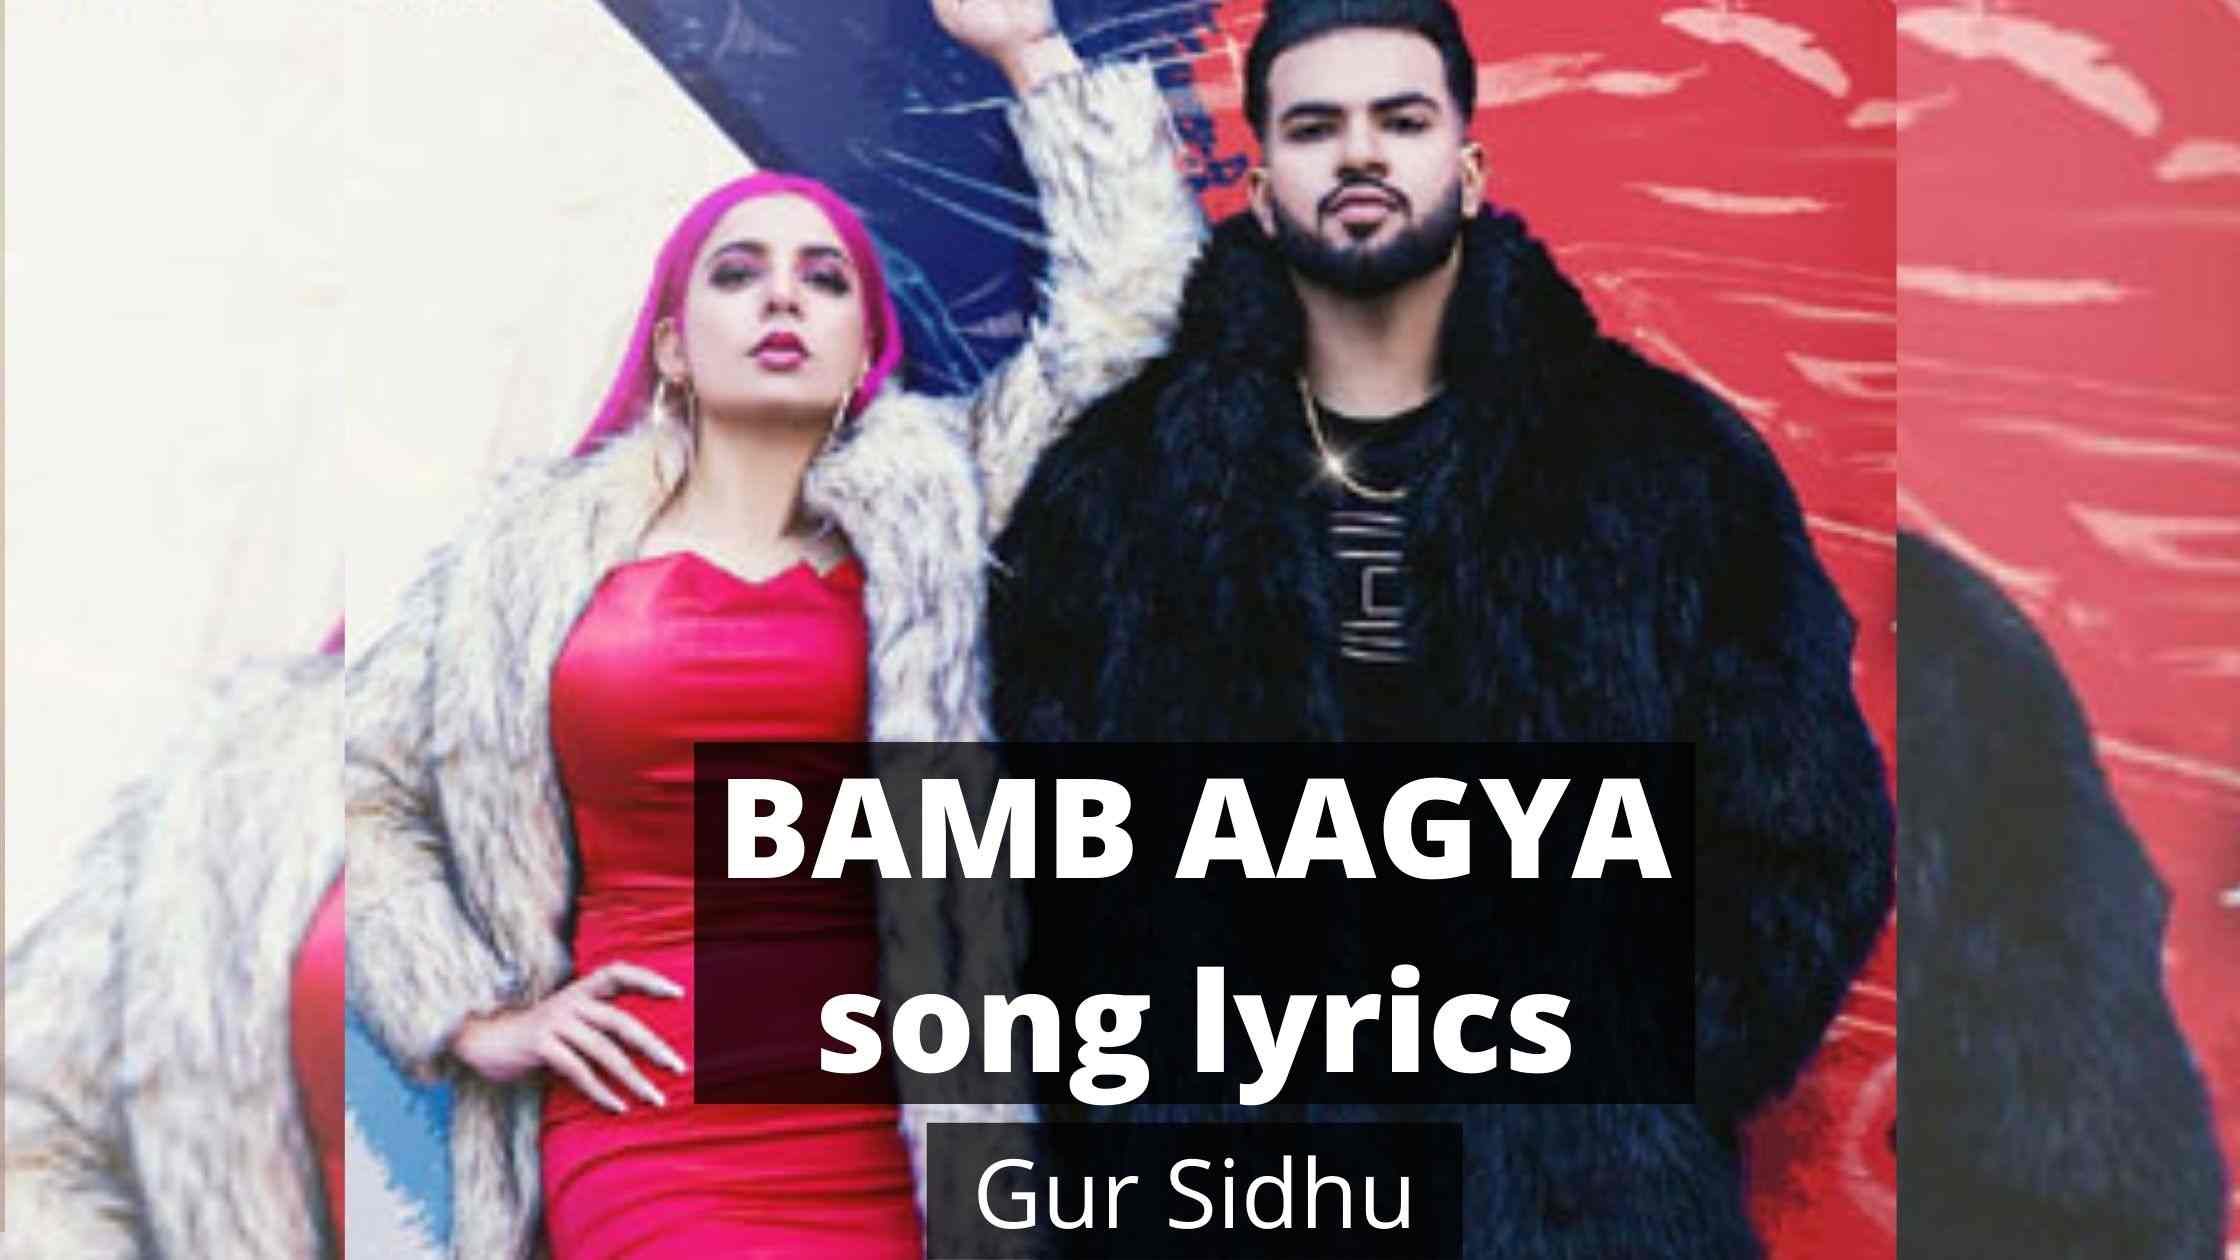 BAMB AAGYA song lyrics by Gur Sidhu Jasmine Sandlas